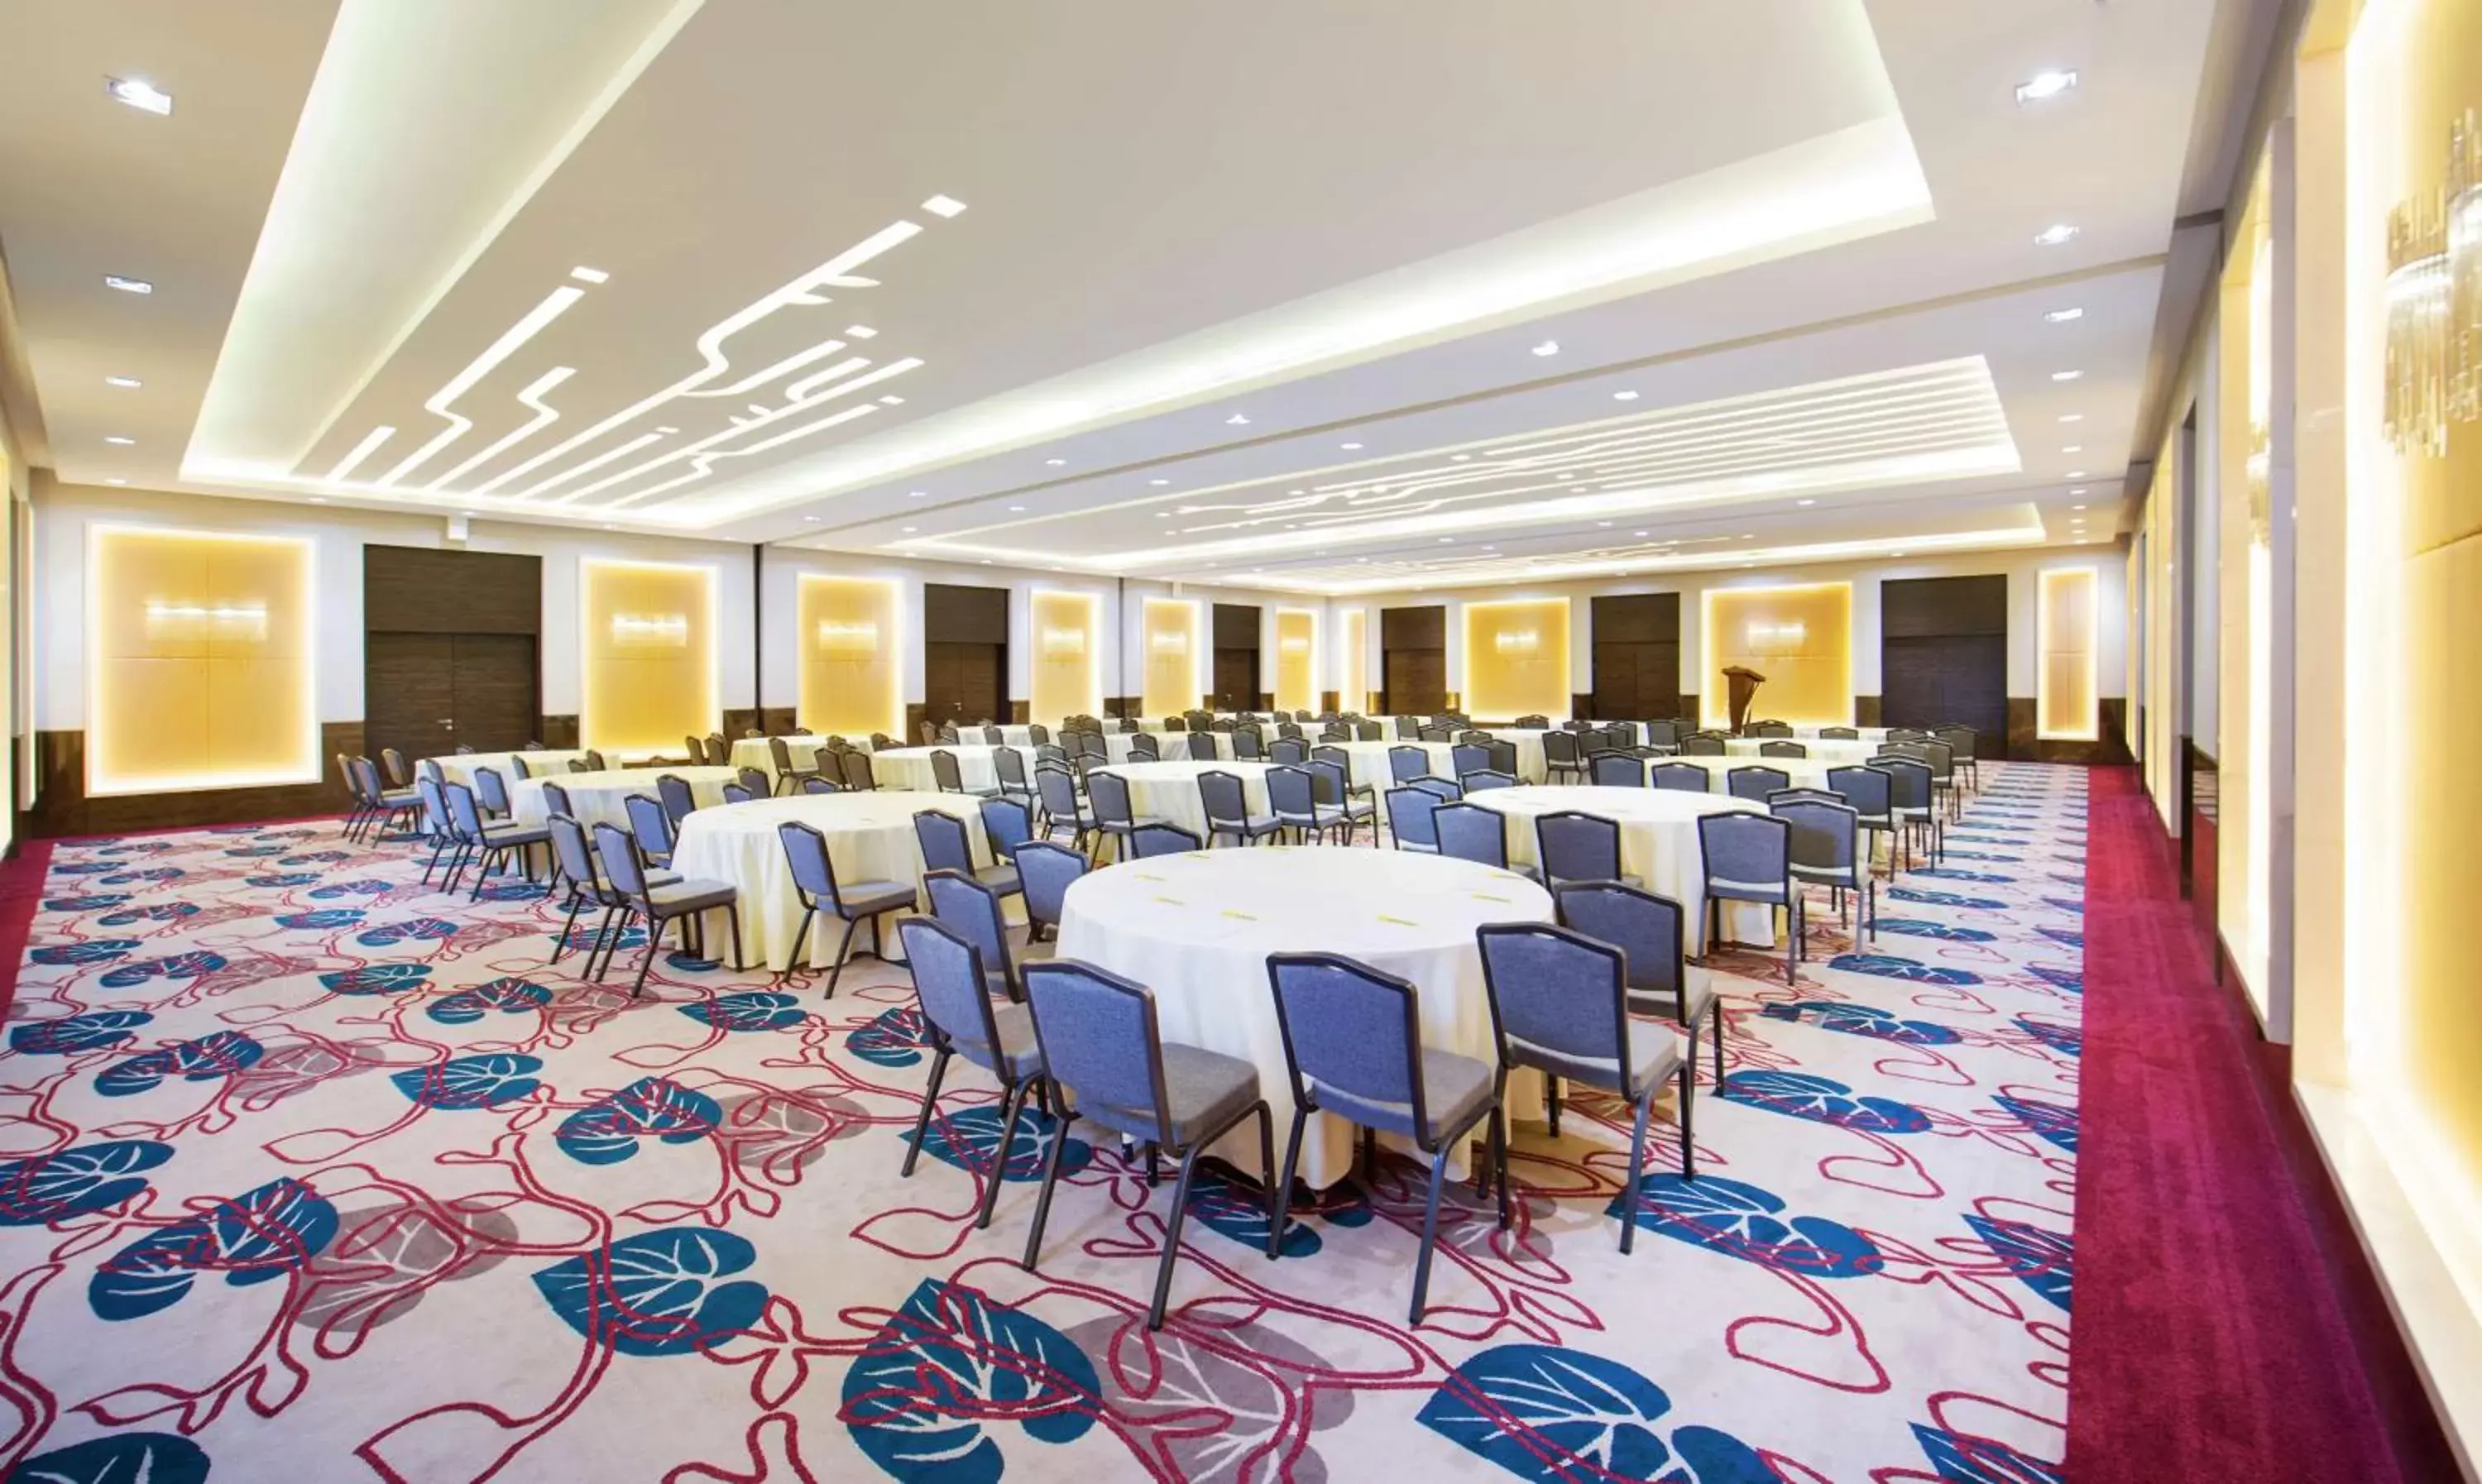 Banquet/Function facilities, Banquet Facilities in Hilton Garden Inn Ras Al Khaimah